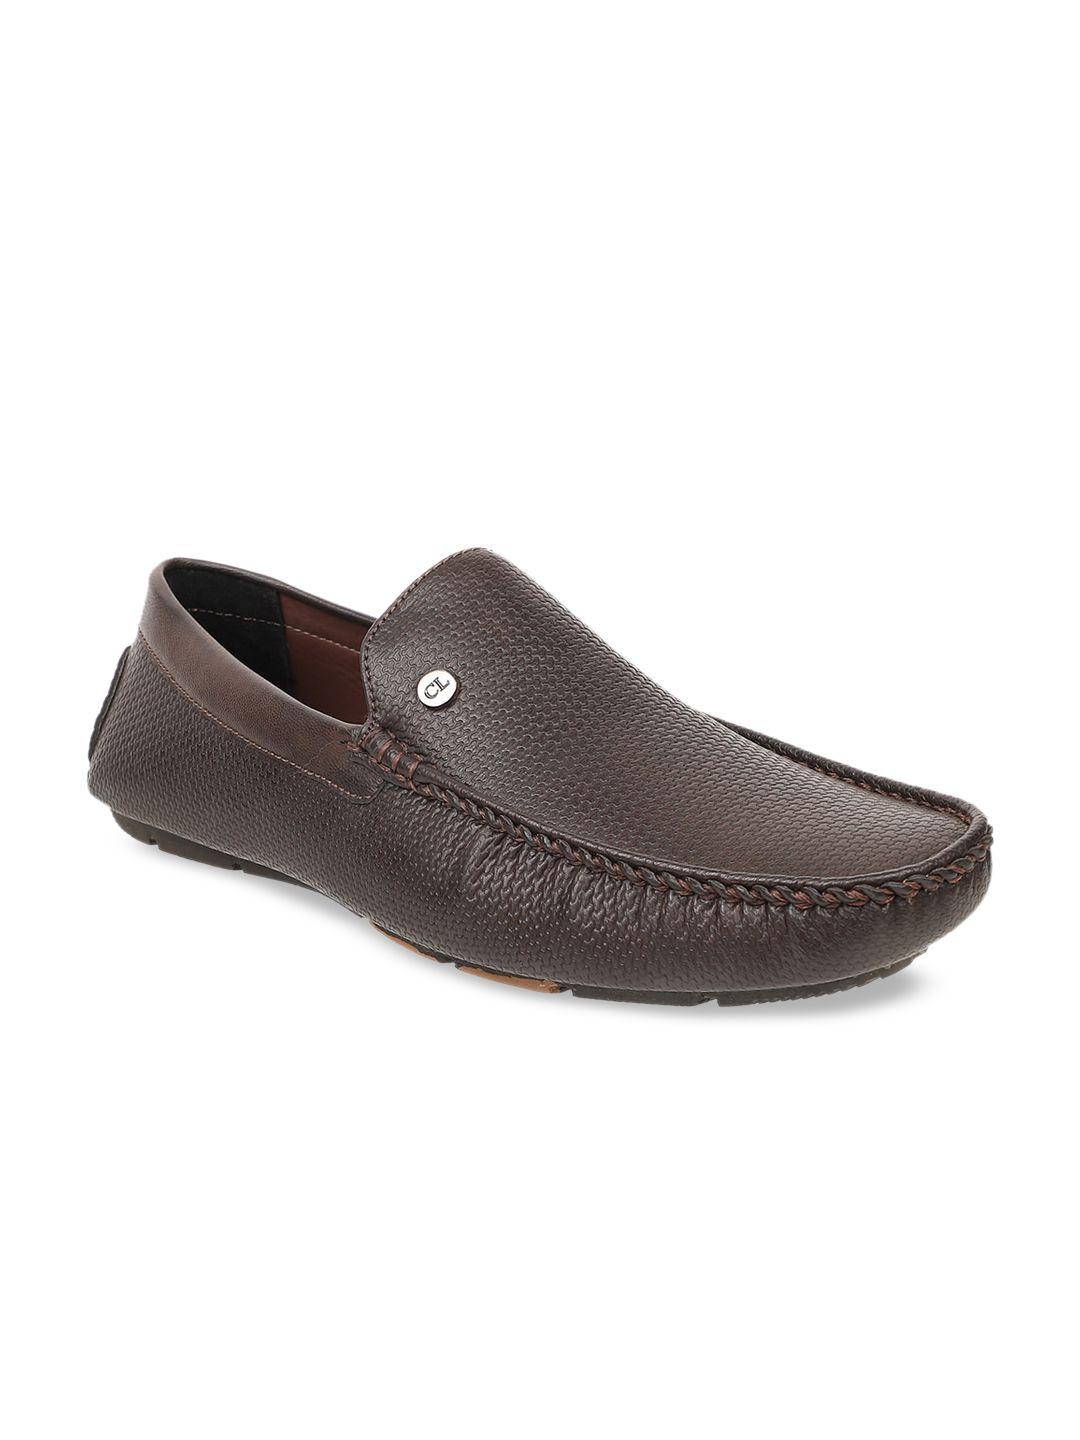 carlton london men brown driving shoes